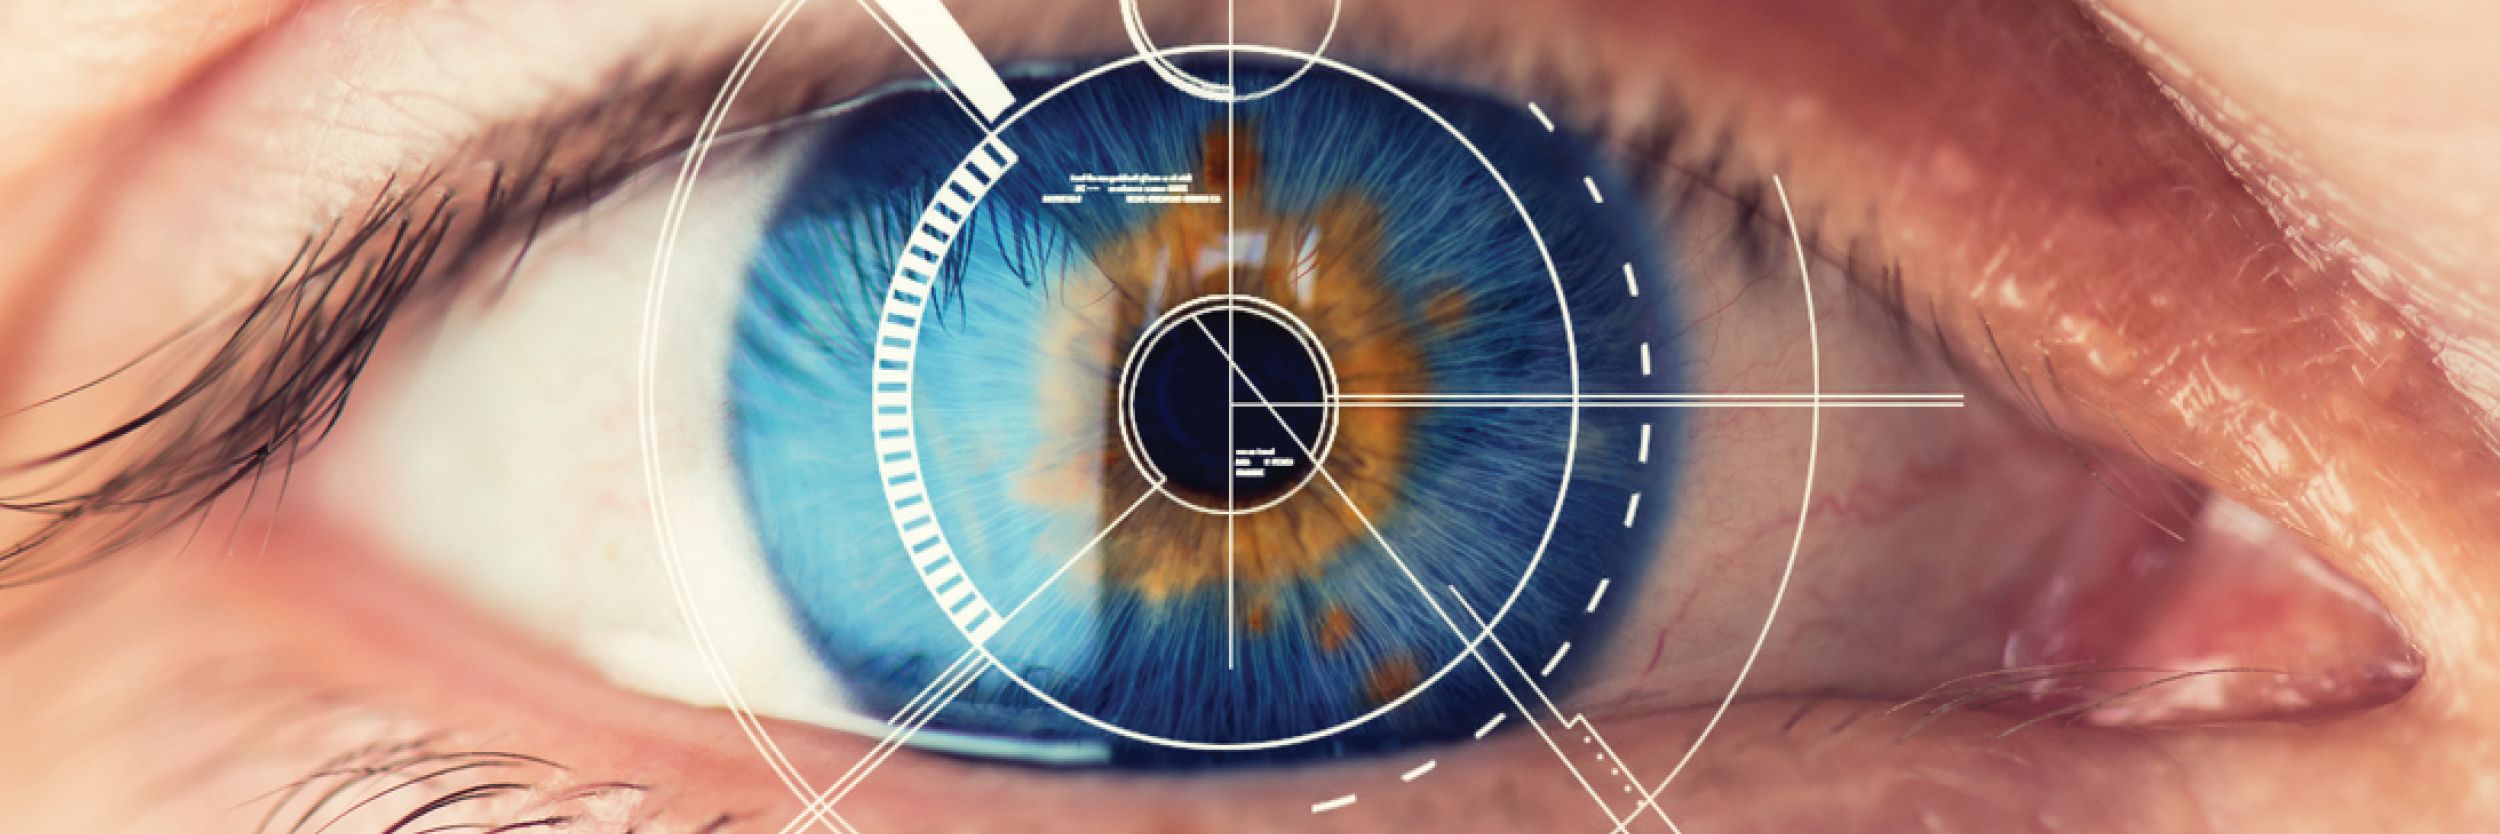 Тест сетчатки глаза. Сетчатка глаза биометрия. Сканер по радужной оболочке глаза. Коррекция зрения лазером.